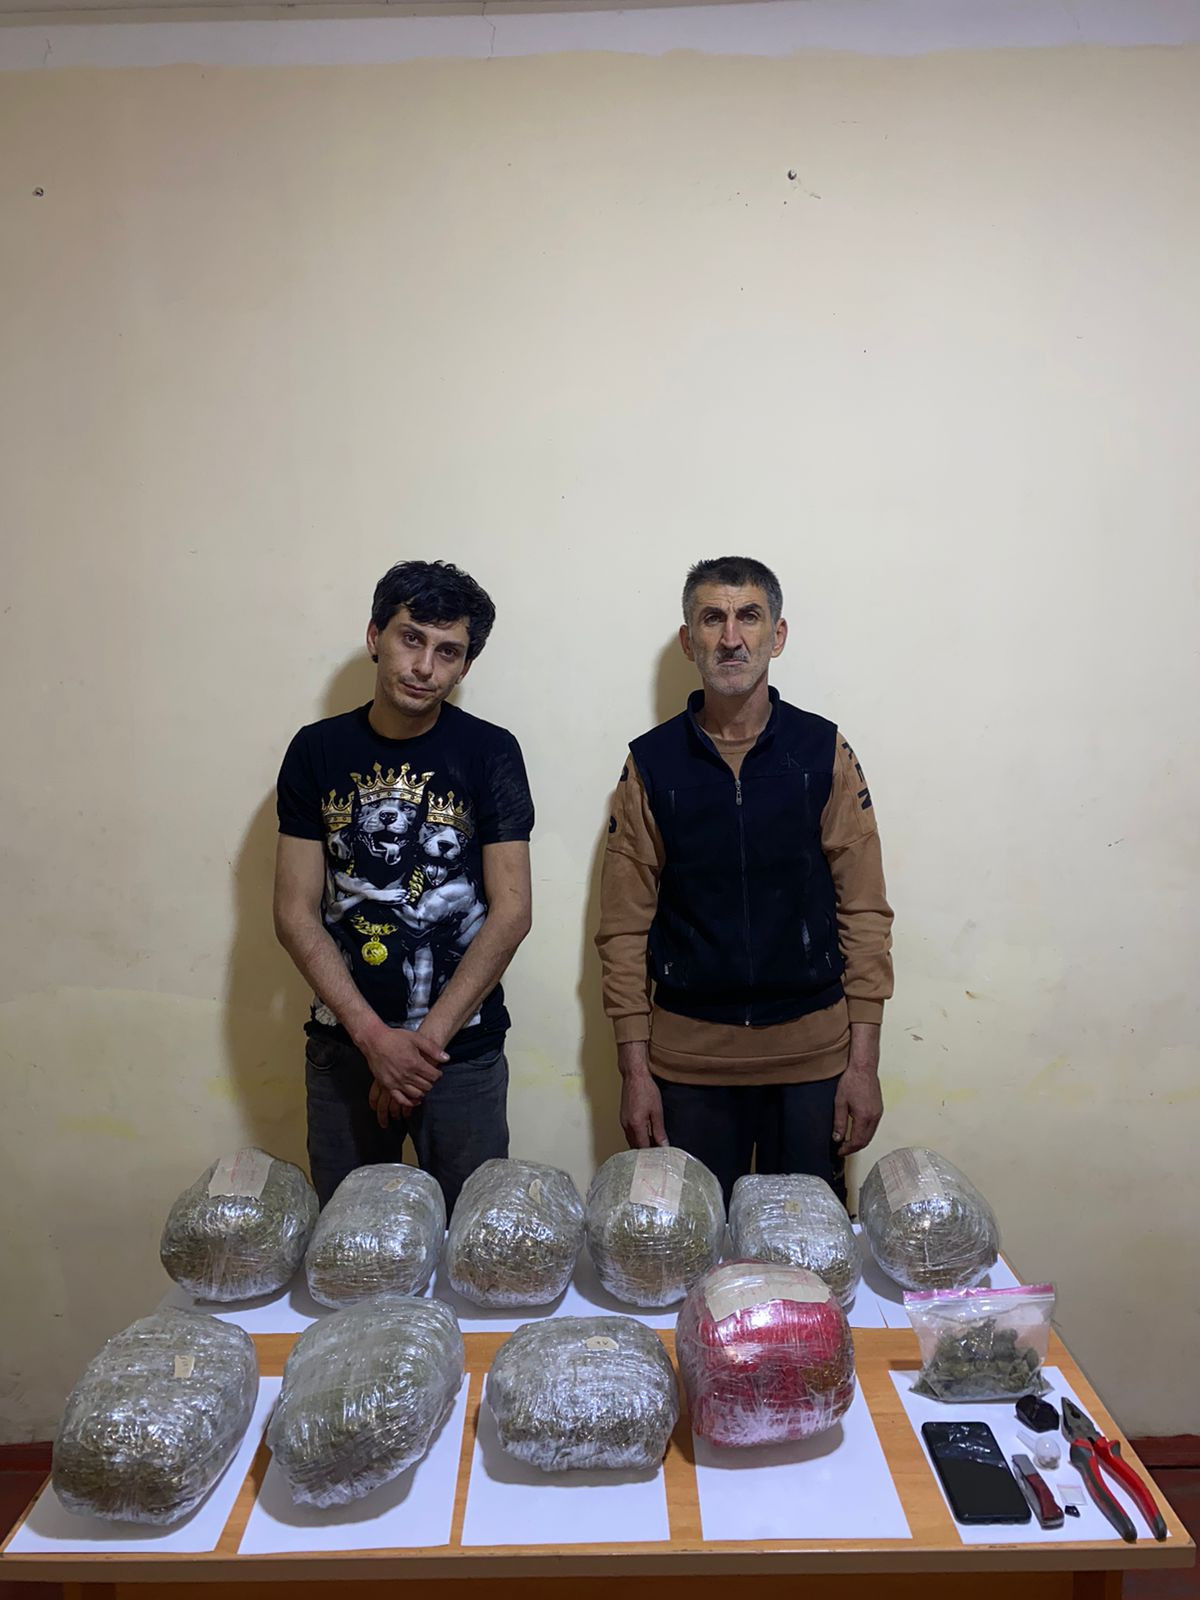 Dövlət sərhədindən 10 kiloqrama yaxın narkotik keçirilməsinin qarşısı alınıb - FOTO 